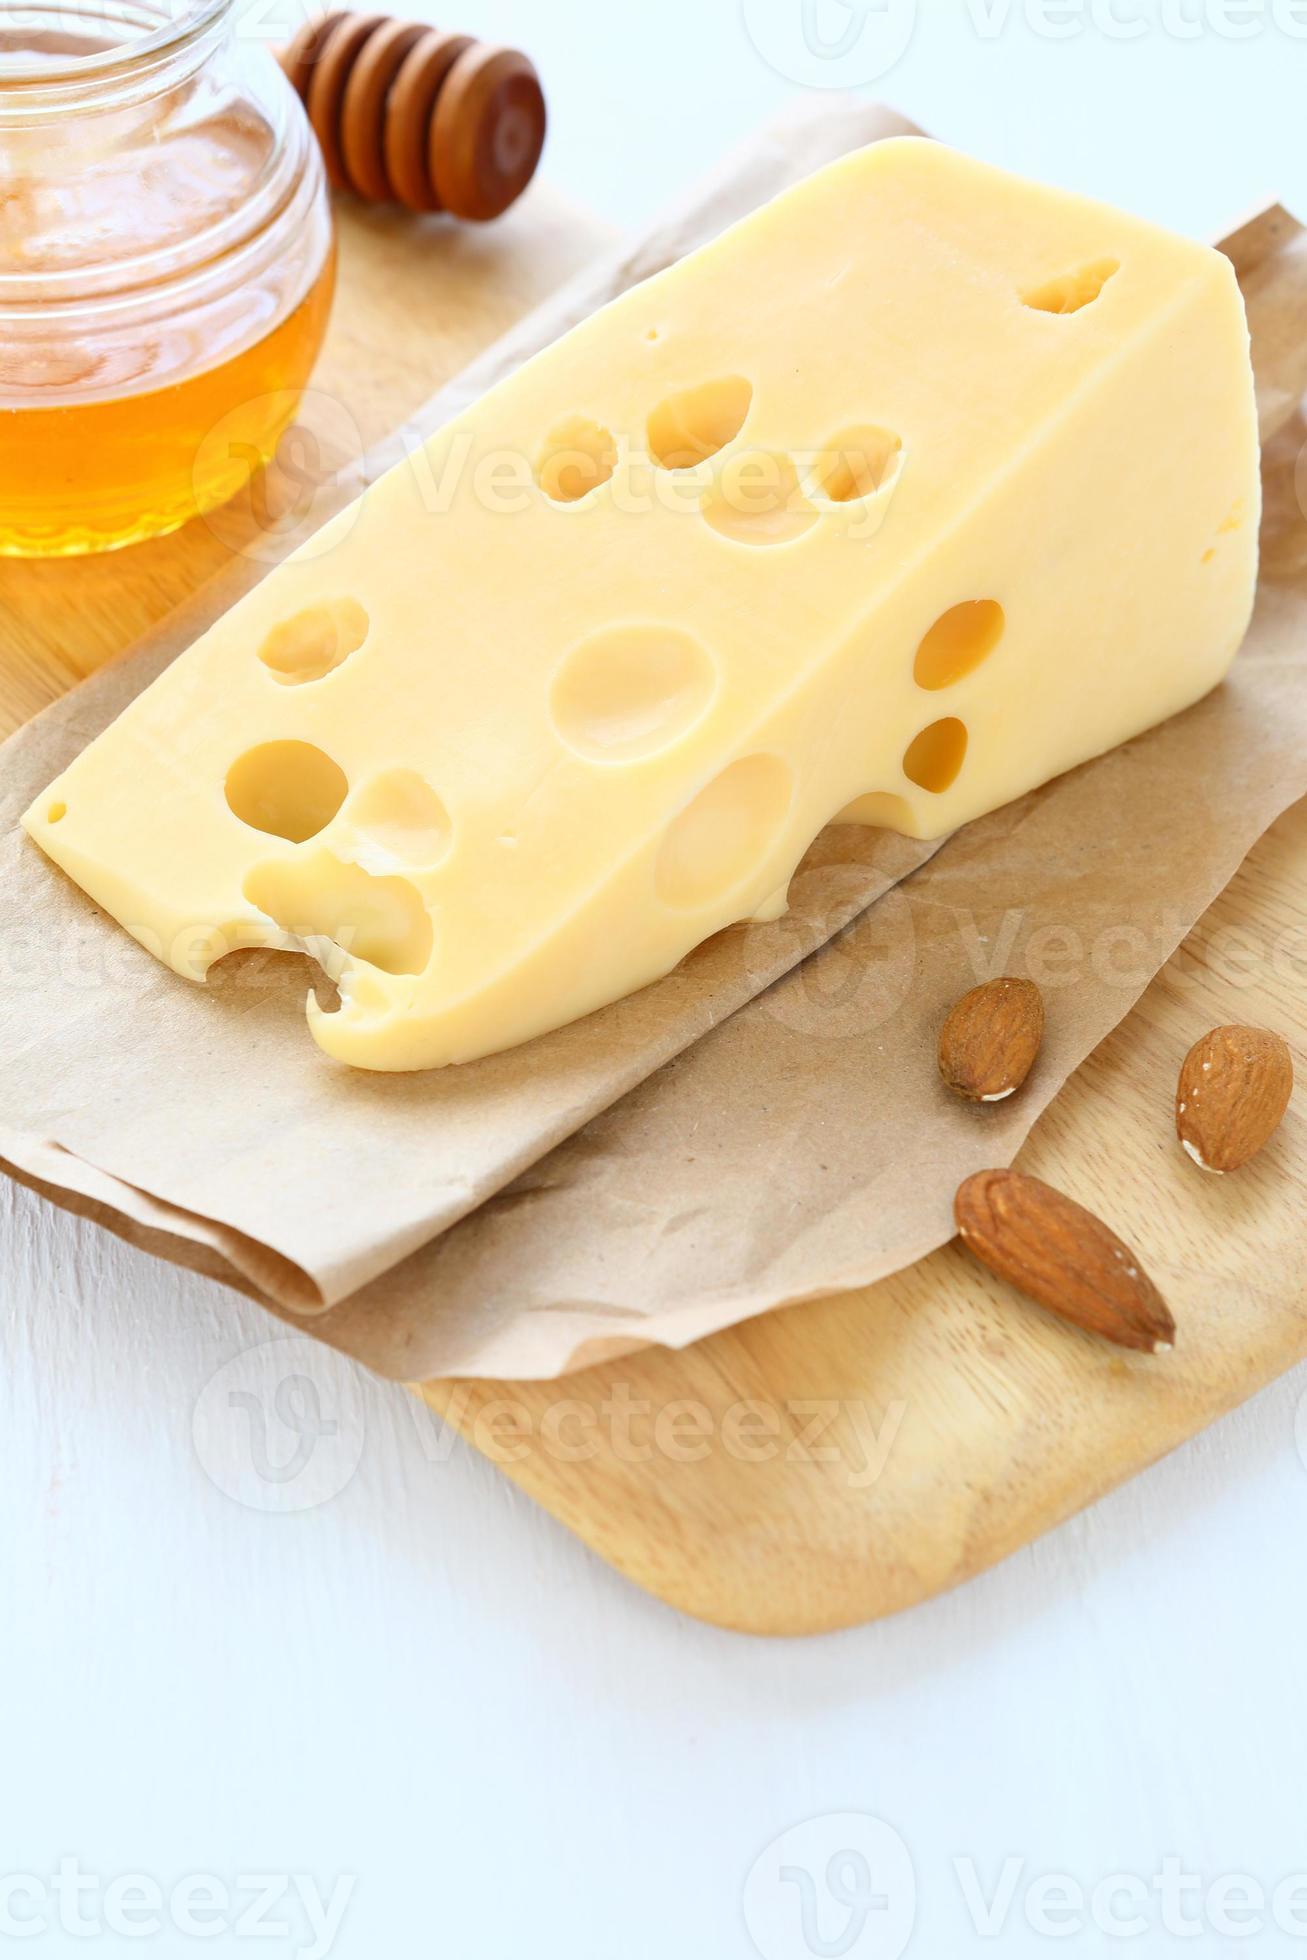 trozo de queso en una tabla con almendras y miel foto